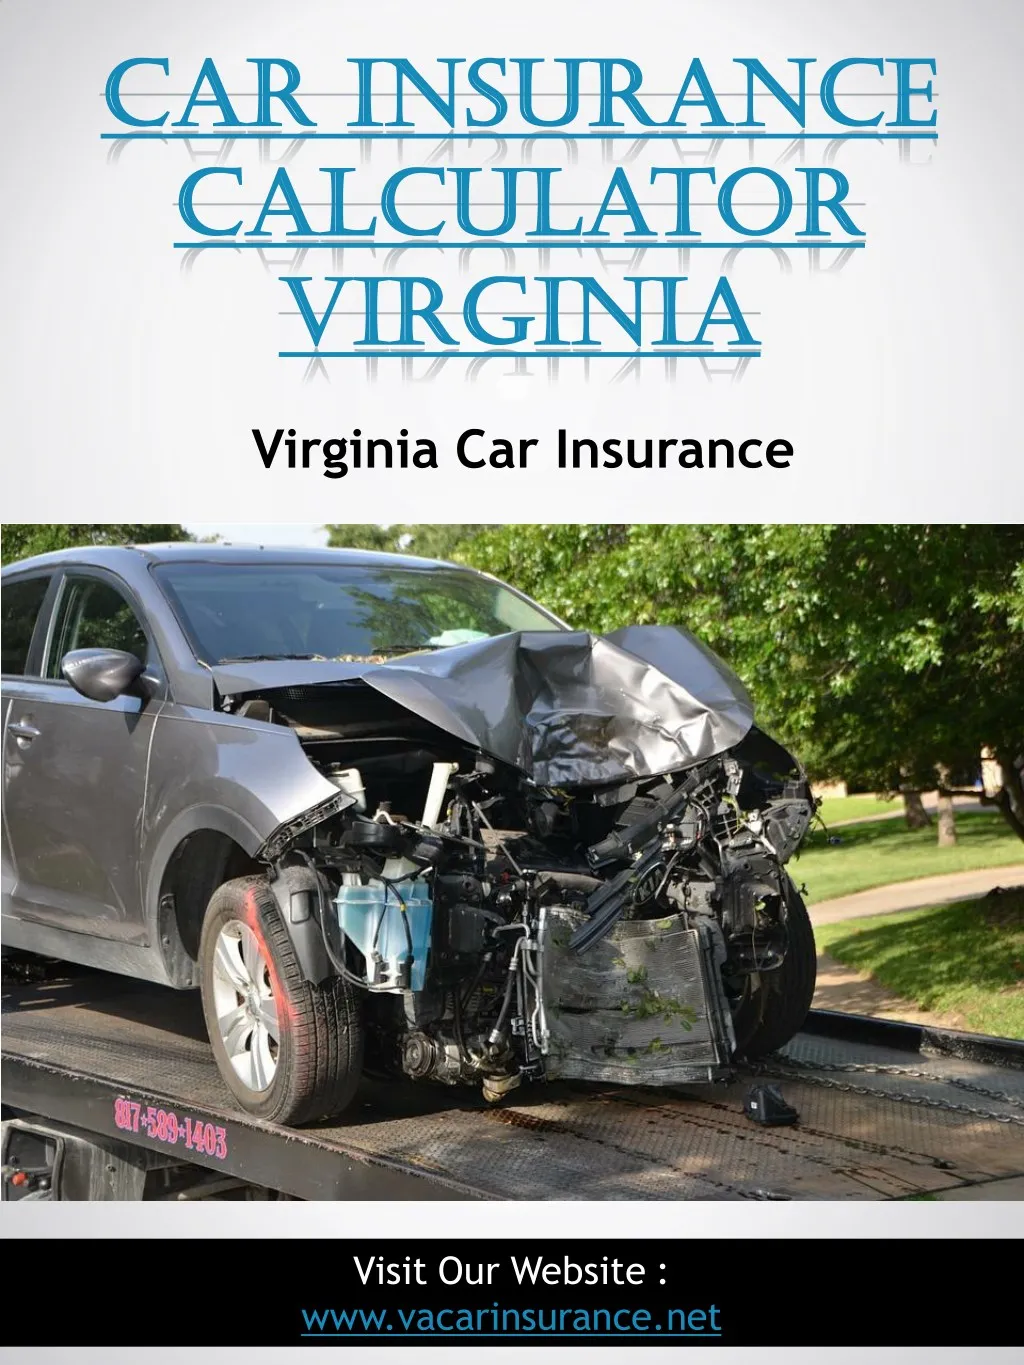 car insurance car insurance calculator calculator